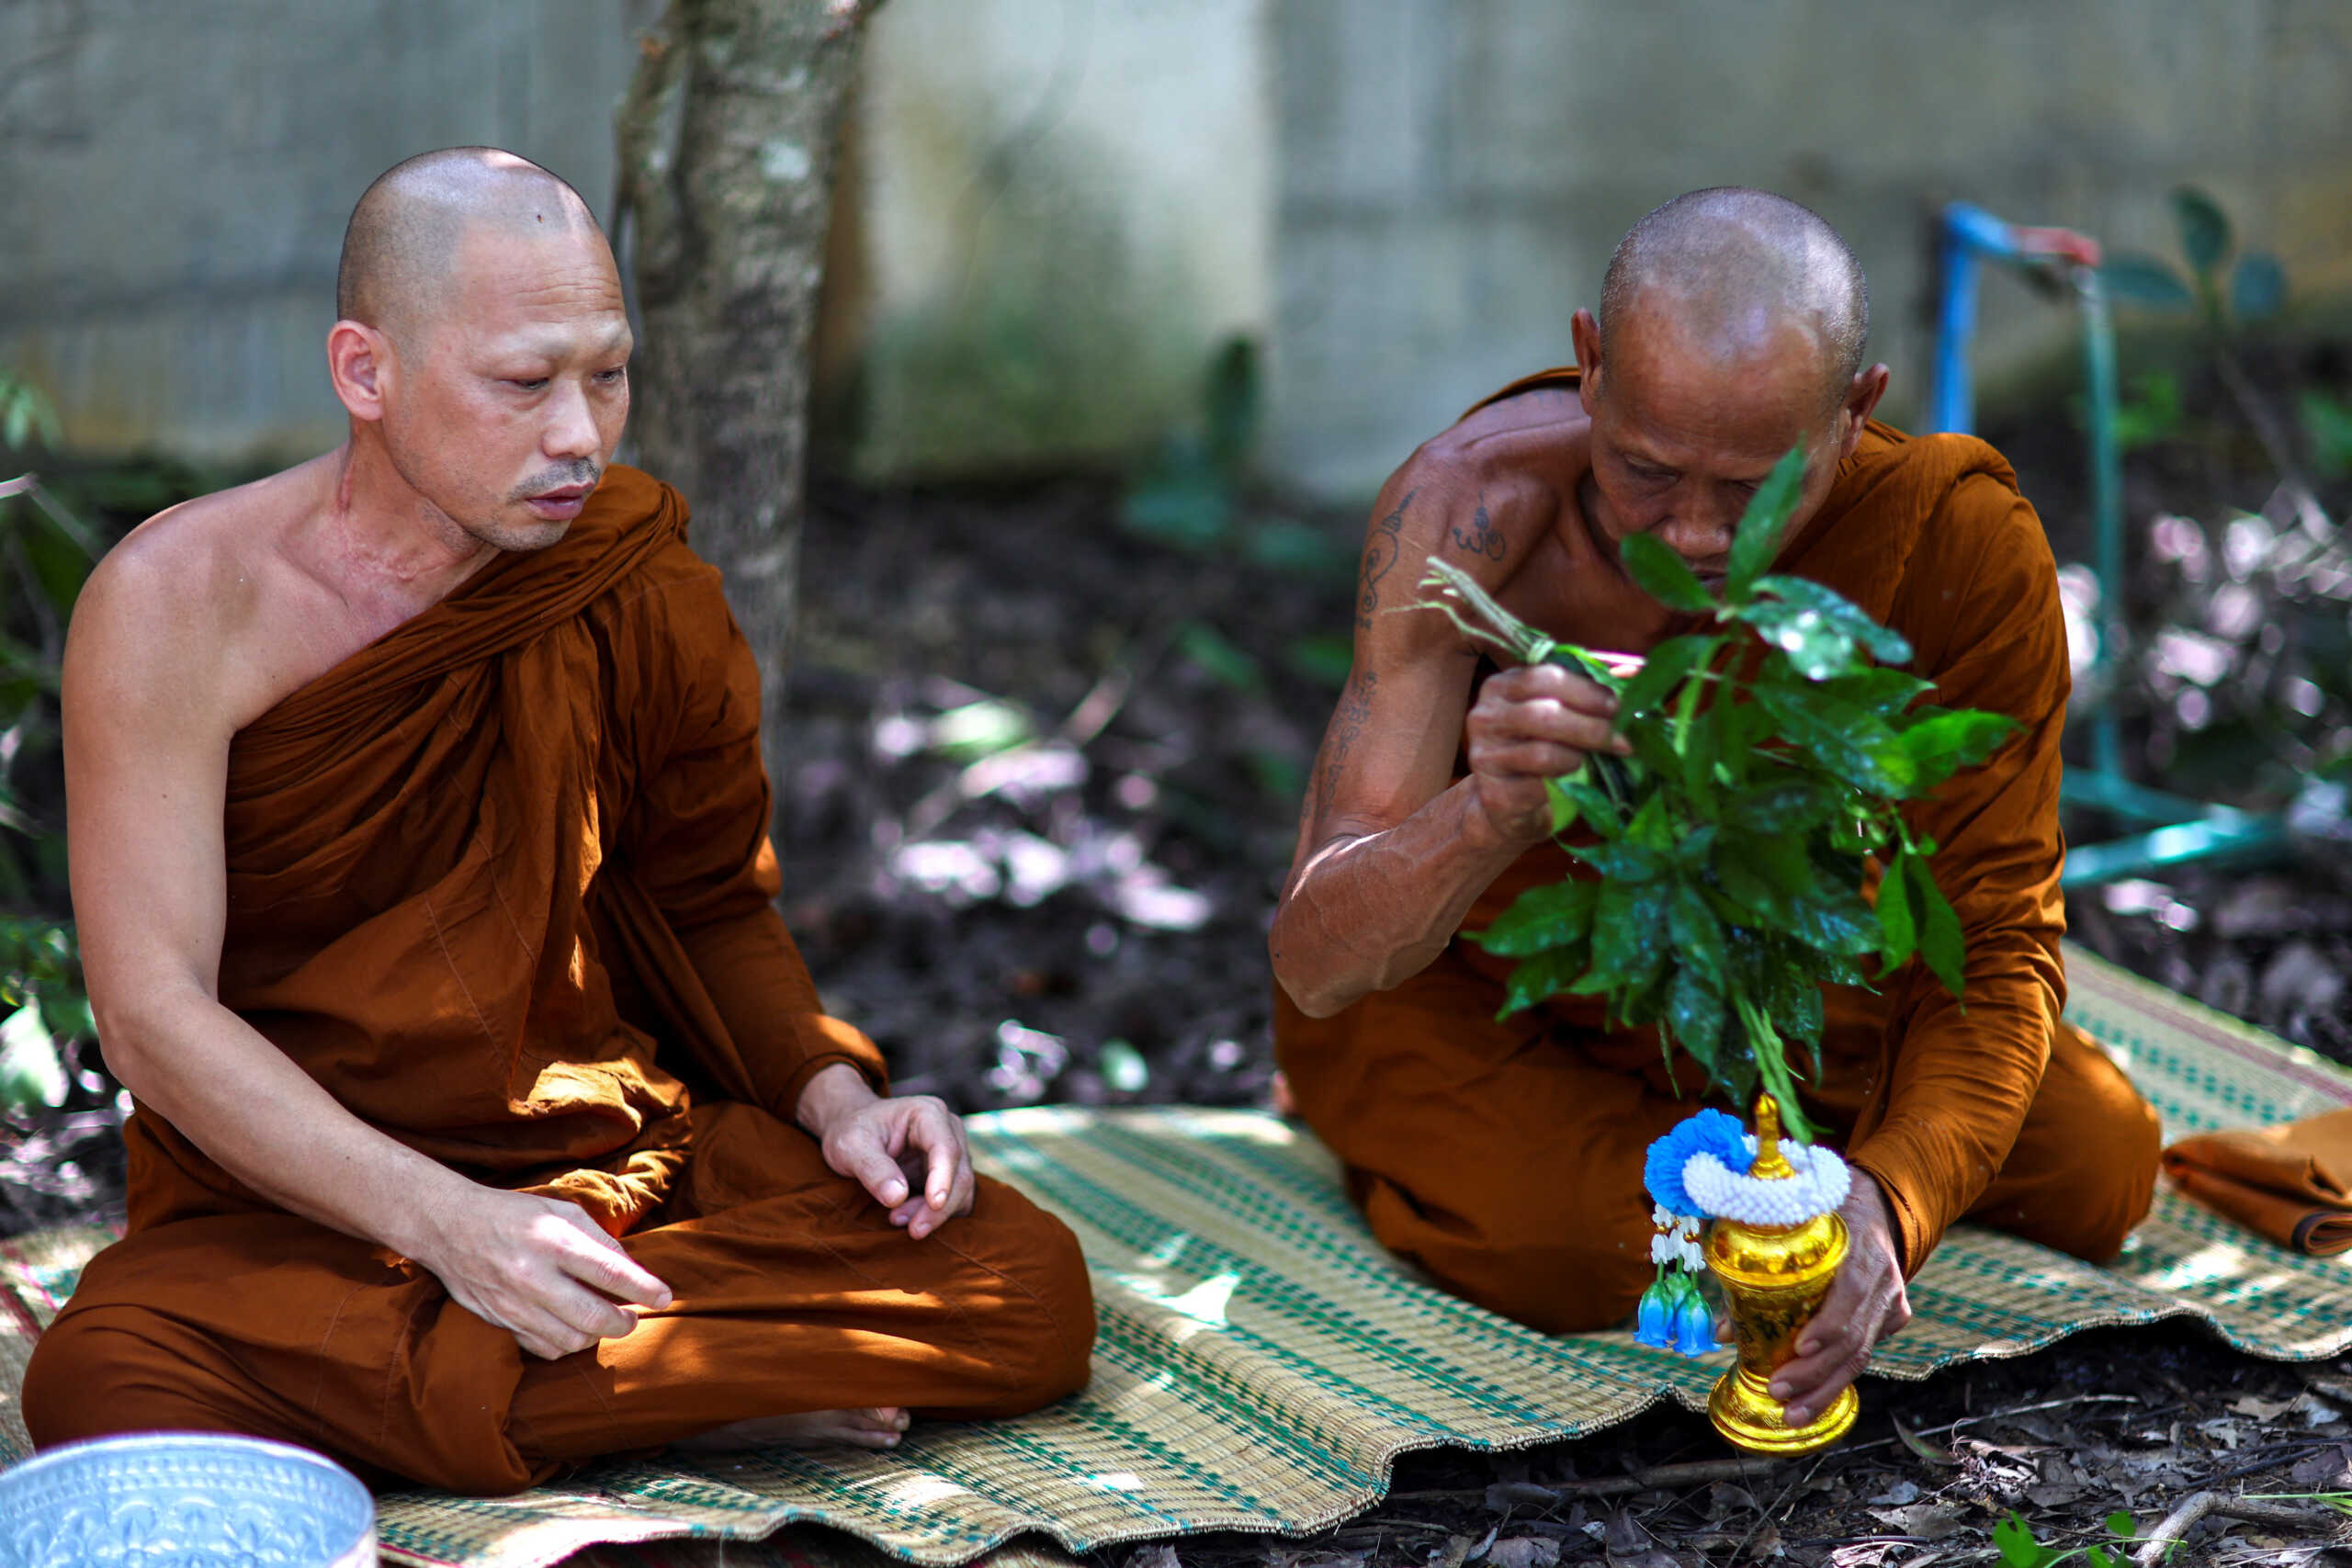 Ταϊλάνδη: Άδειασε ο ναός – Μοναχοί «χαλάρωσαν» με μεθαμφεταμίνη και συνελήφθησαν